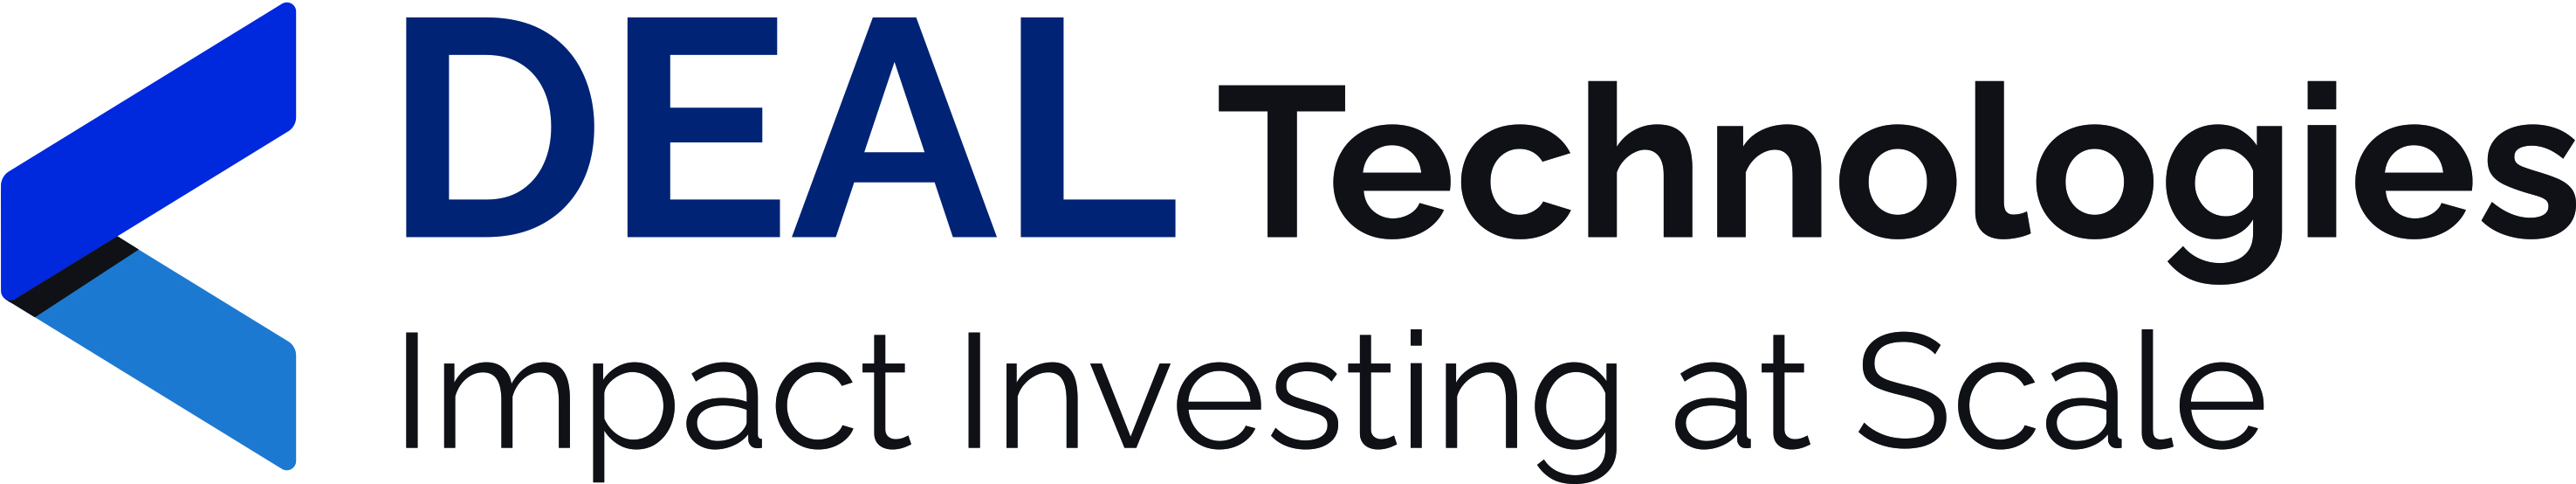 Deal Technologies logo